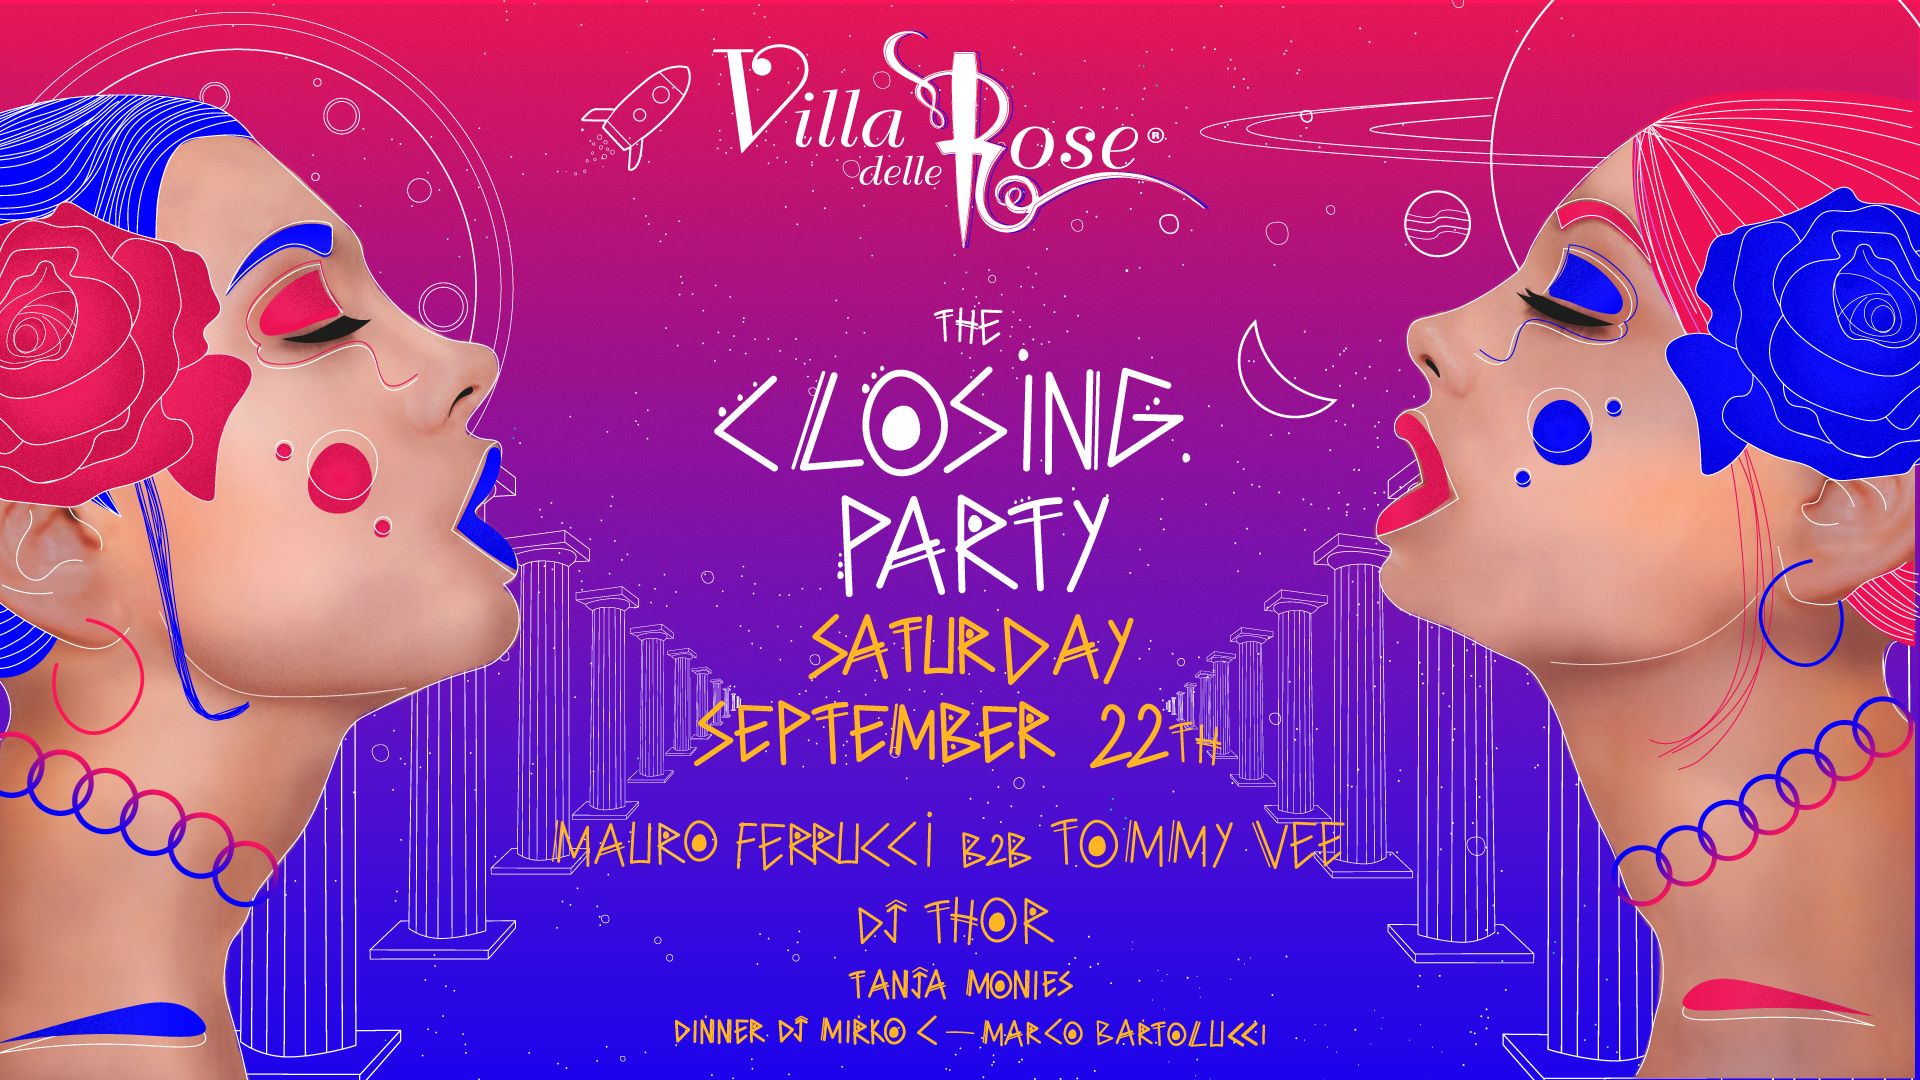 villa delle rose closing party 22 settembre 2018